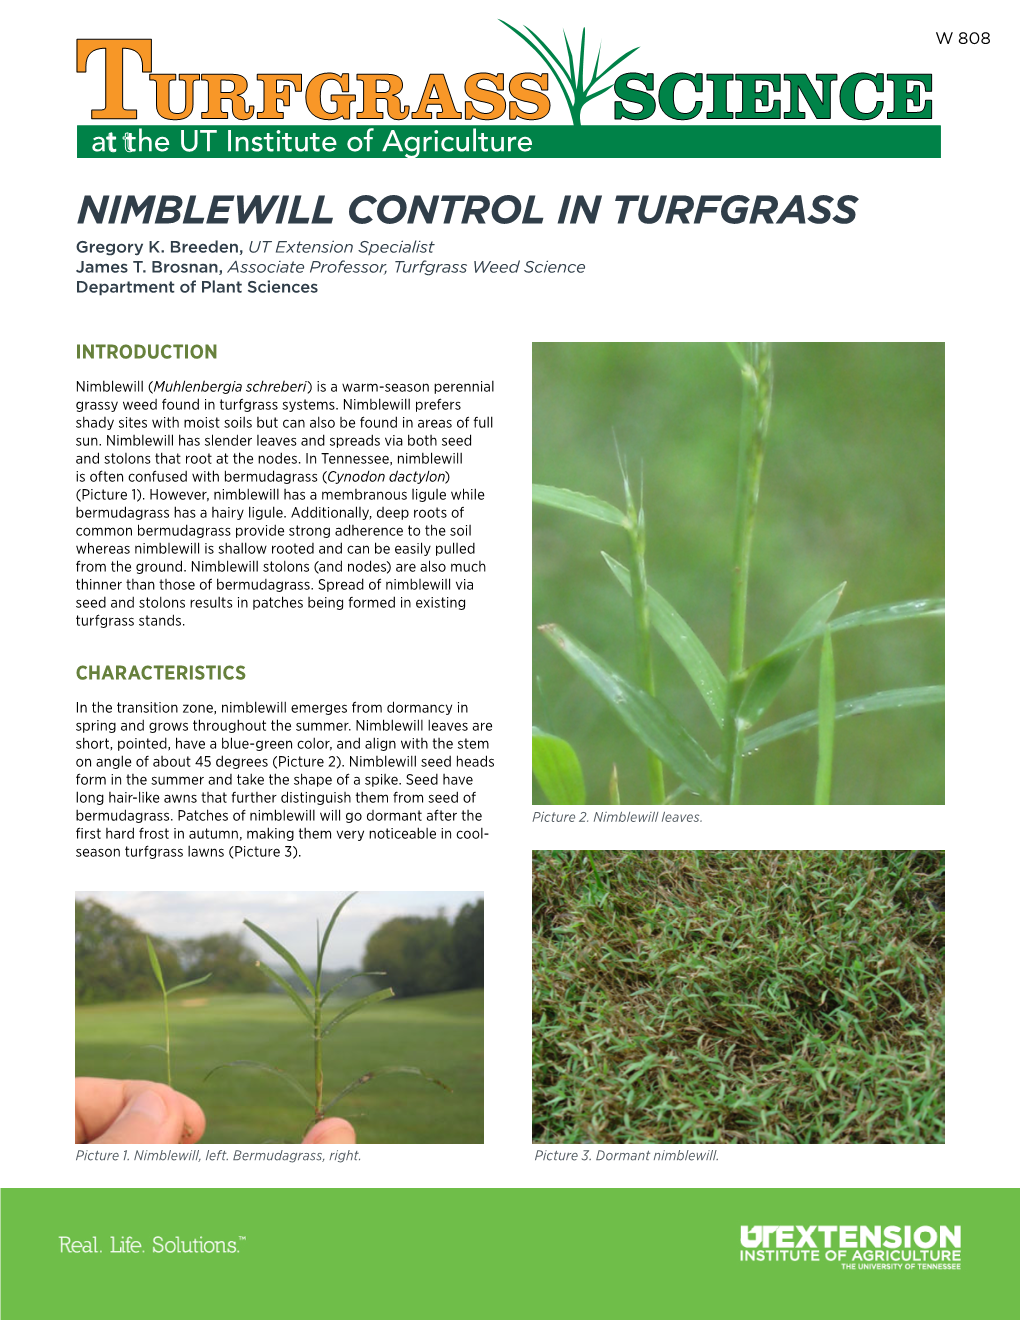 W 808 Nimblewill Control in Turfgrass